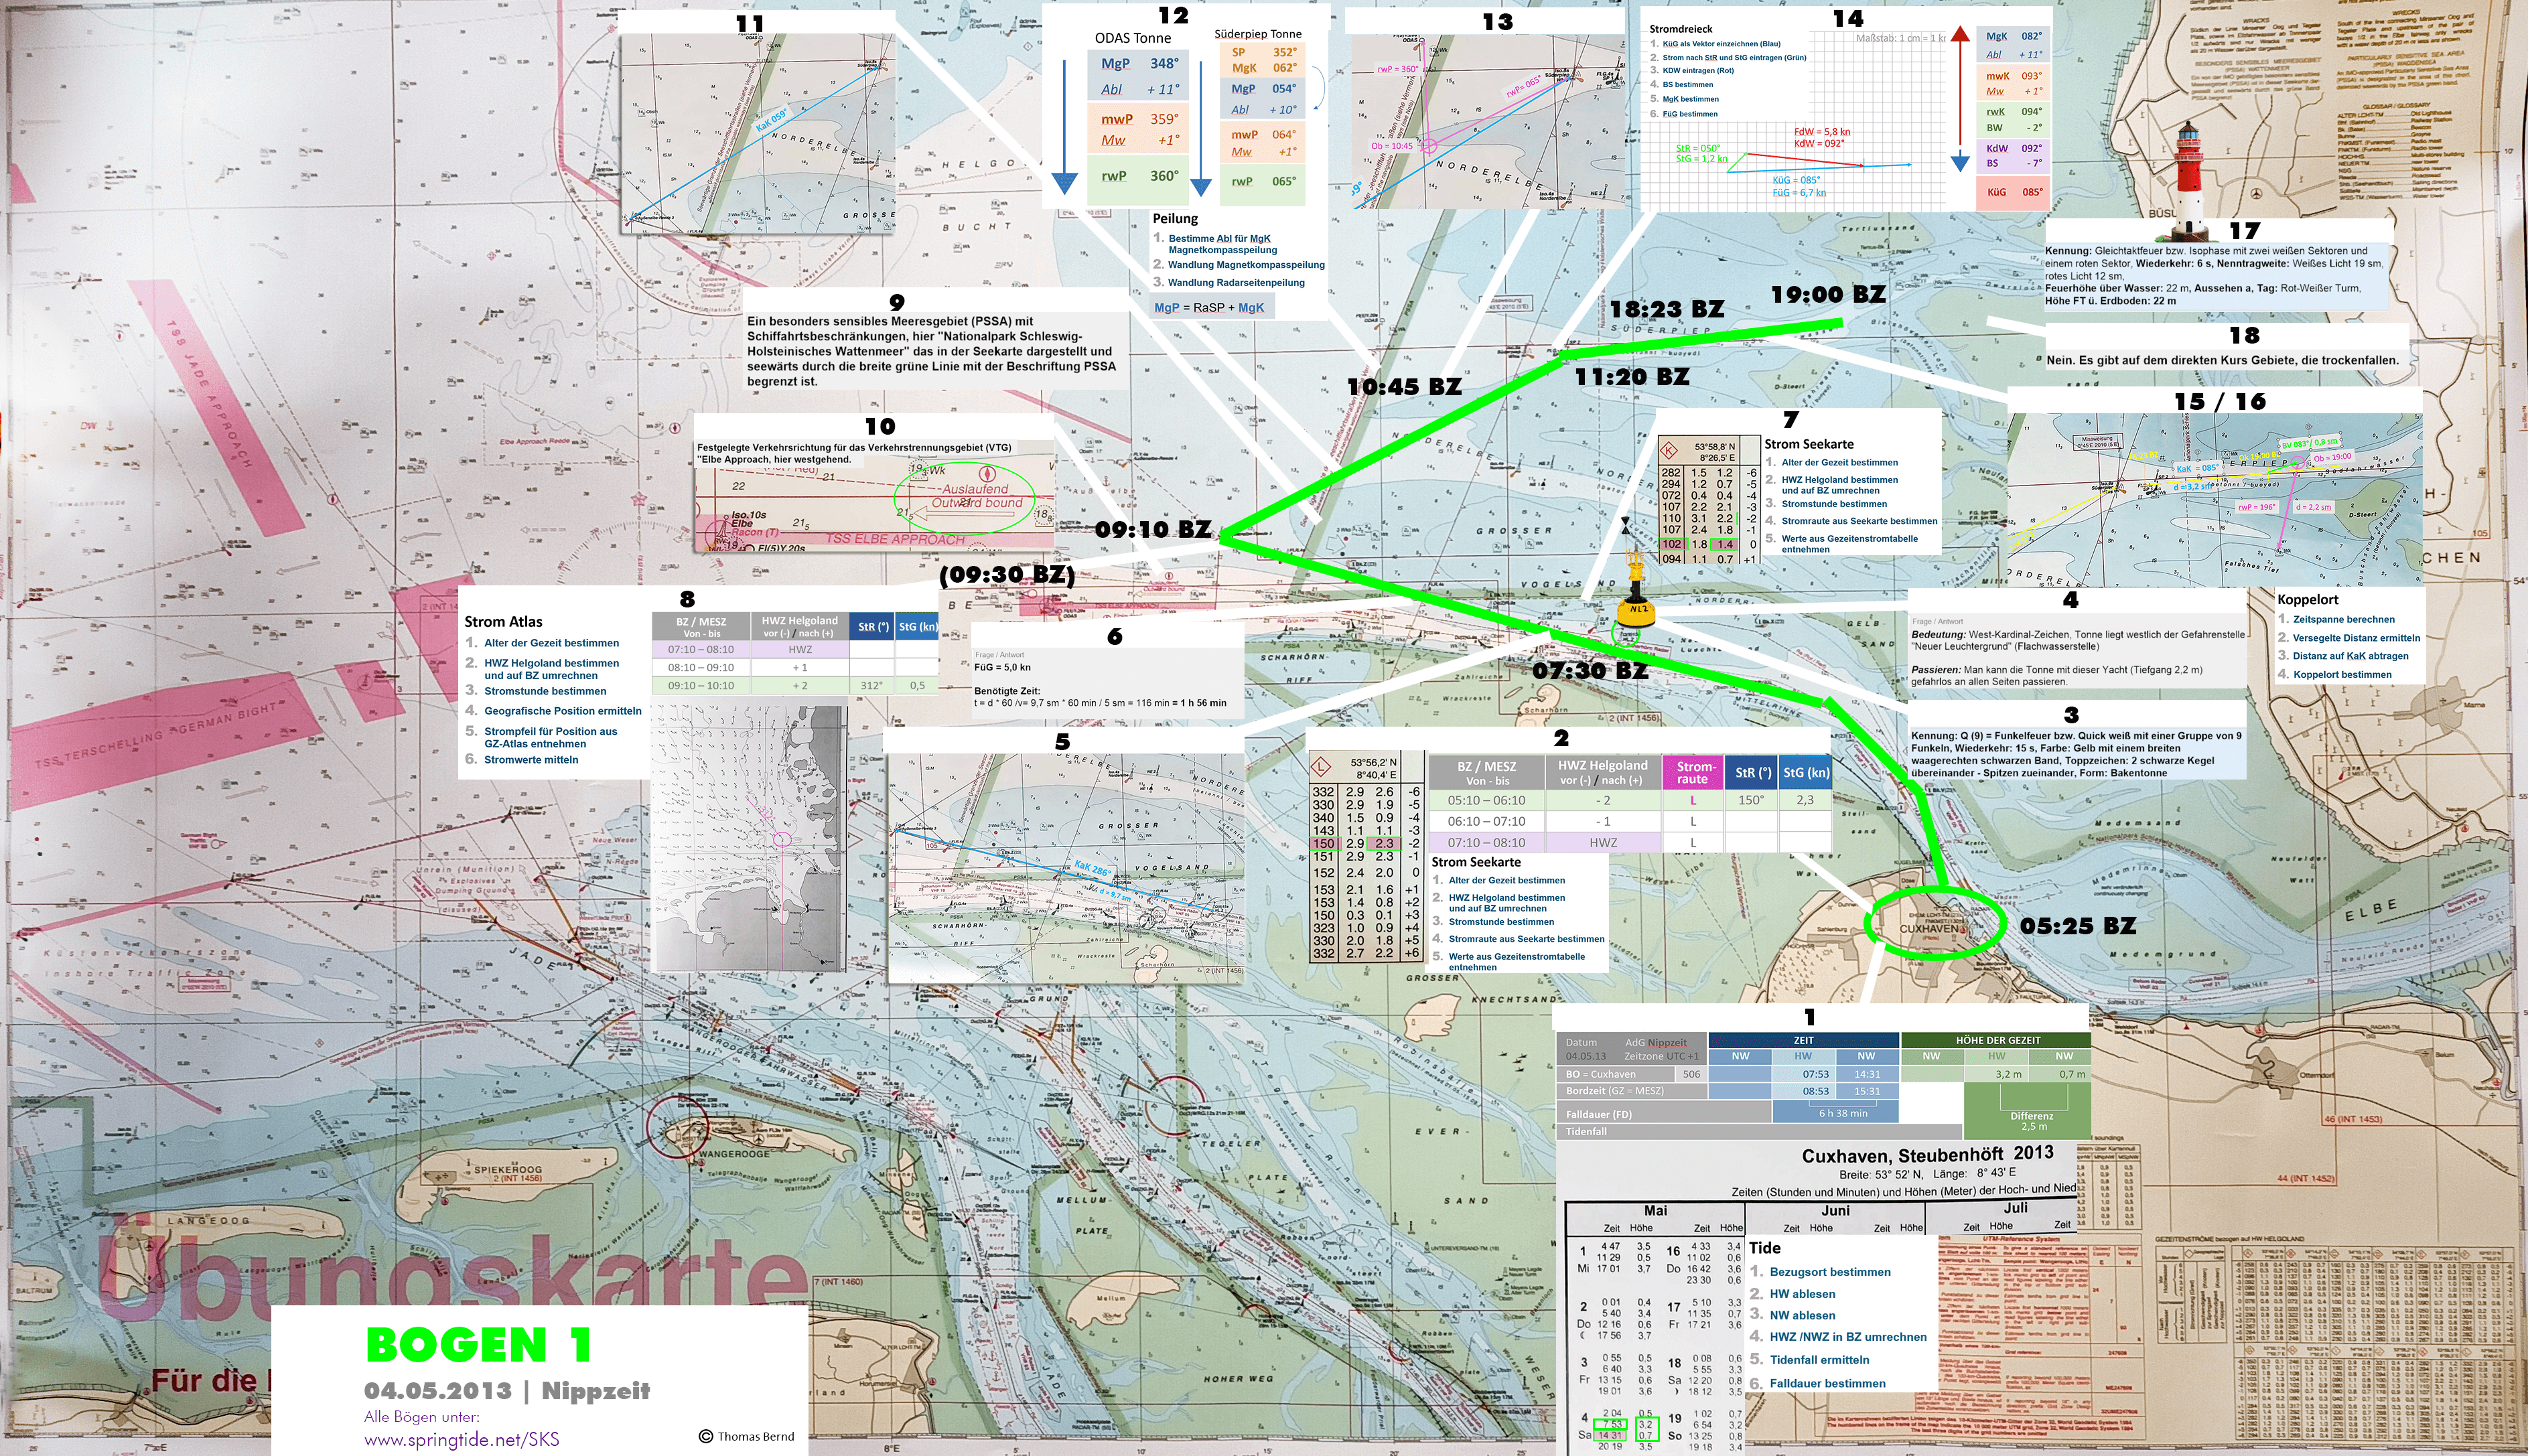 Törn des SKS Navigationsaufgabe 1 und Prüfungsbogen 1 von Cuxhaven nach Büsum